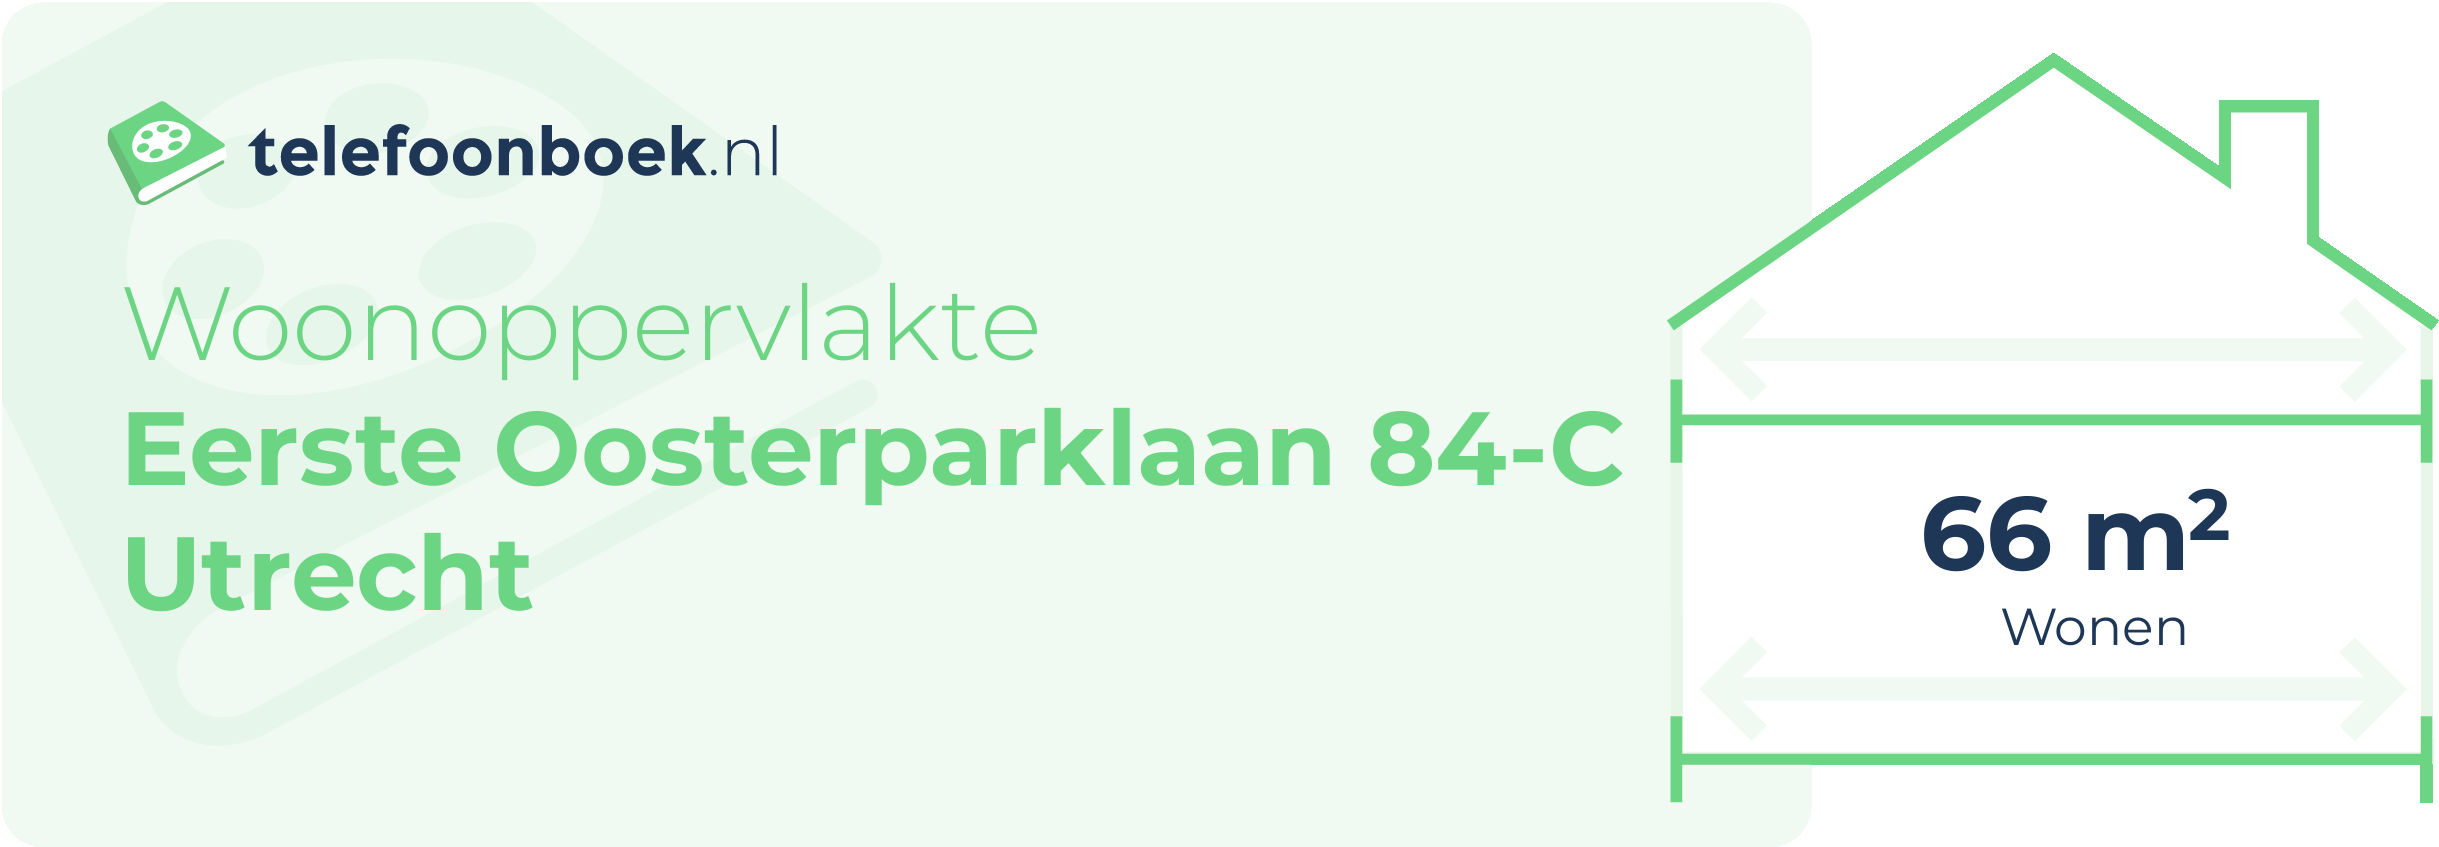 Woonoppervlakte Eerste Oosterparklaan 84-C Utrecht